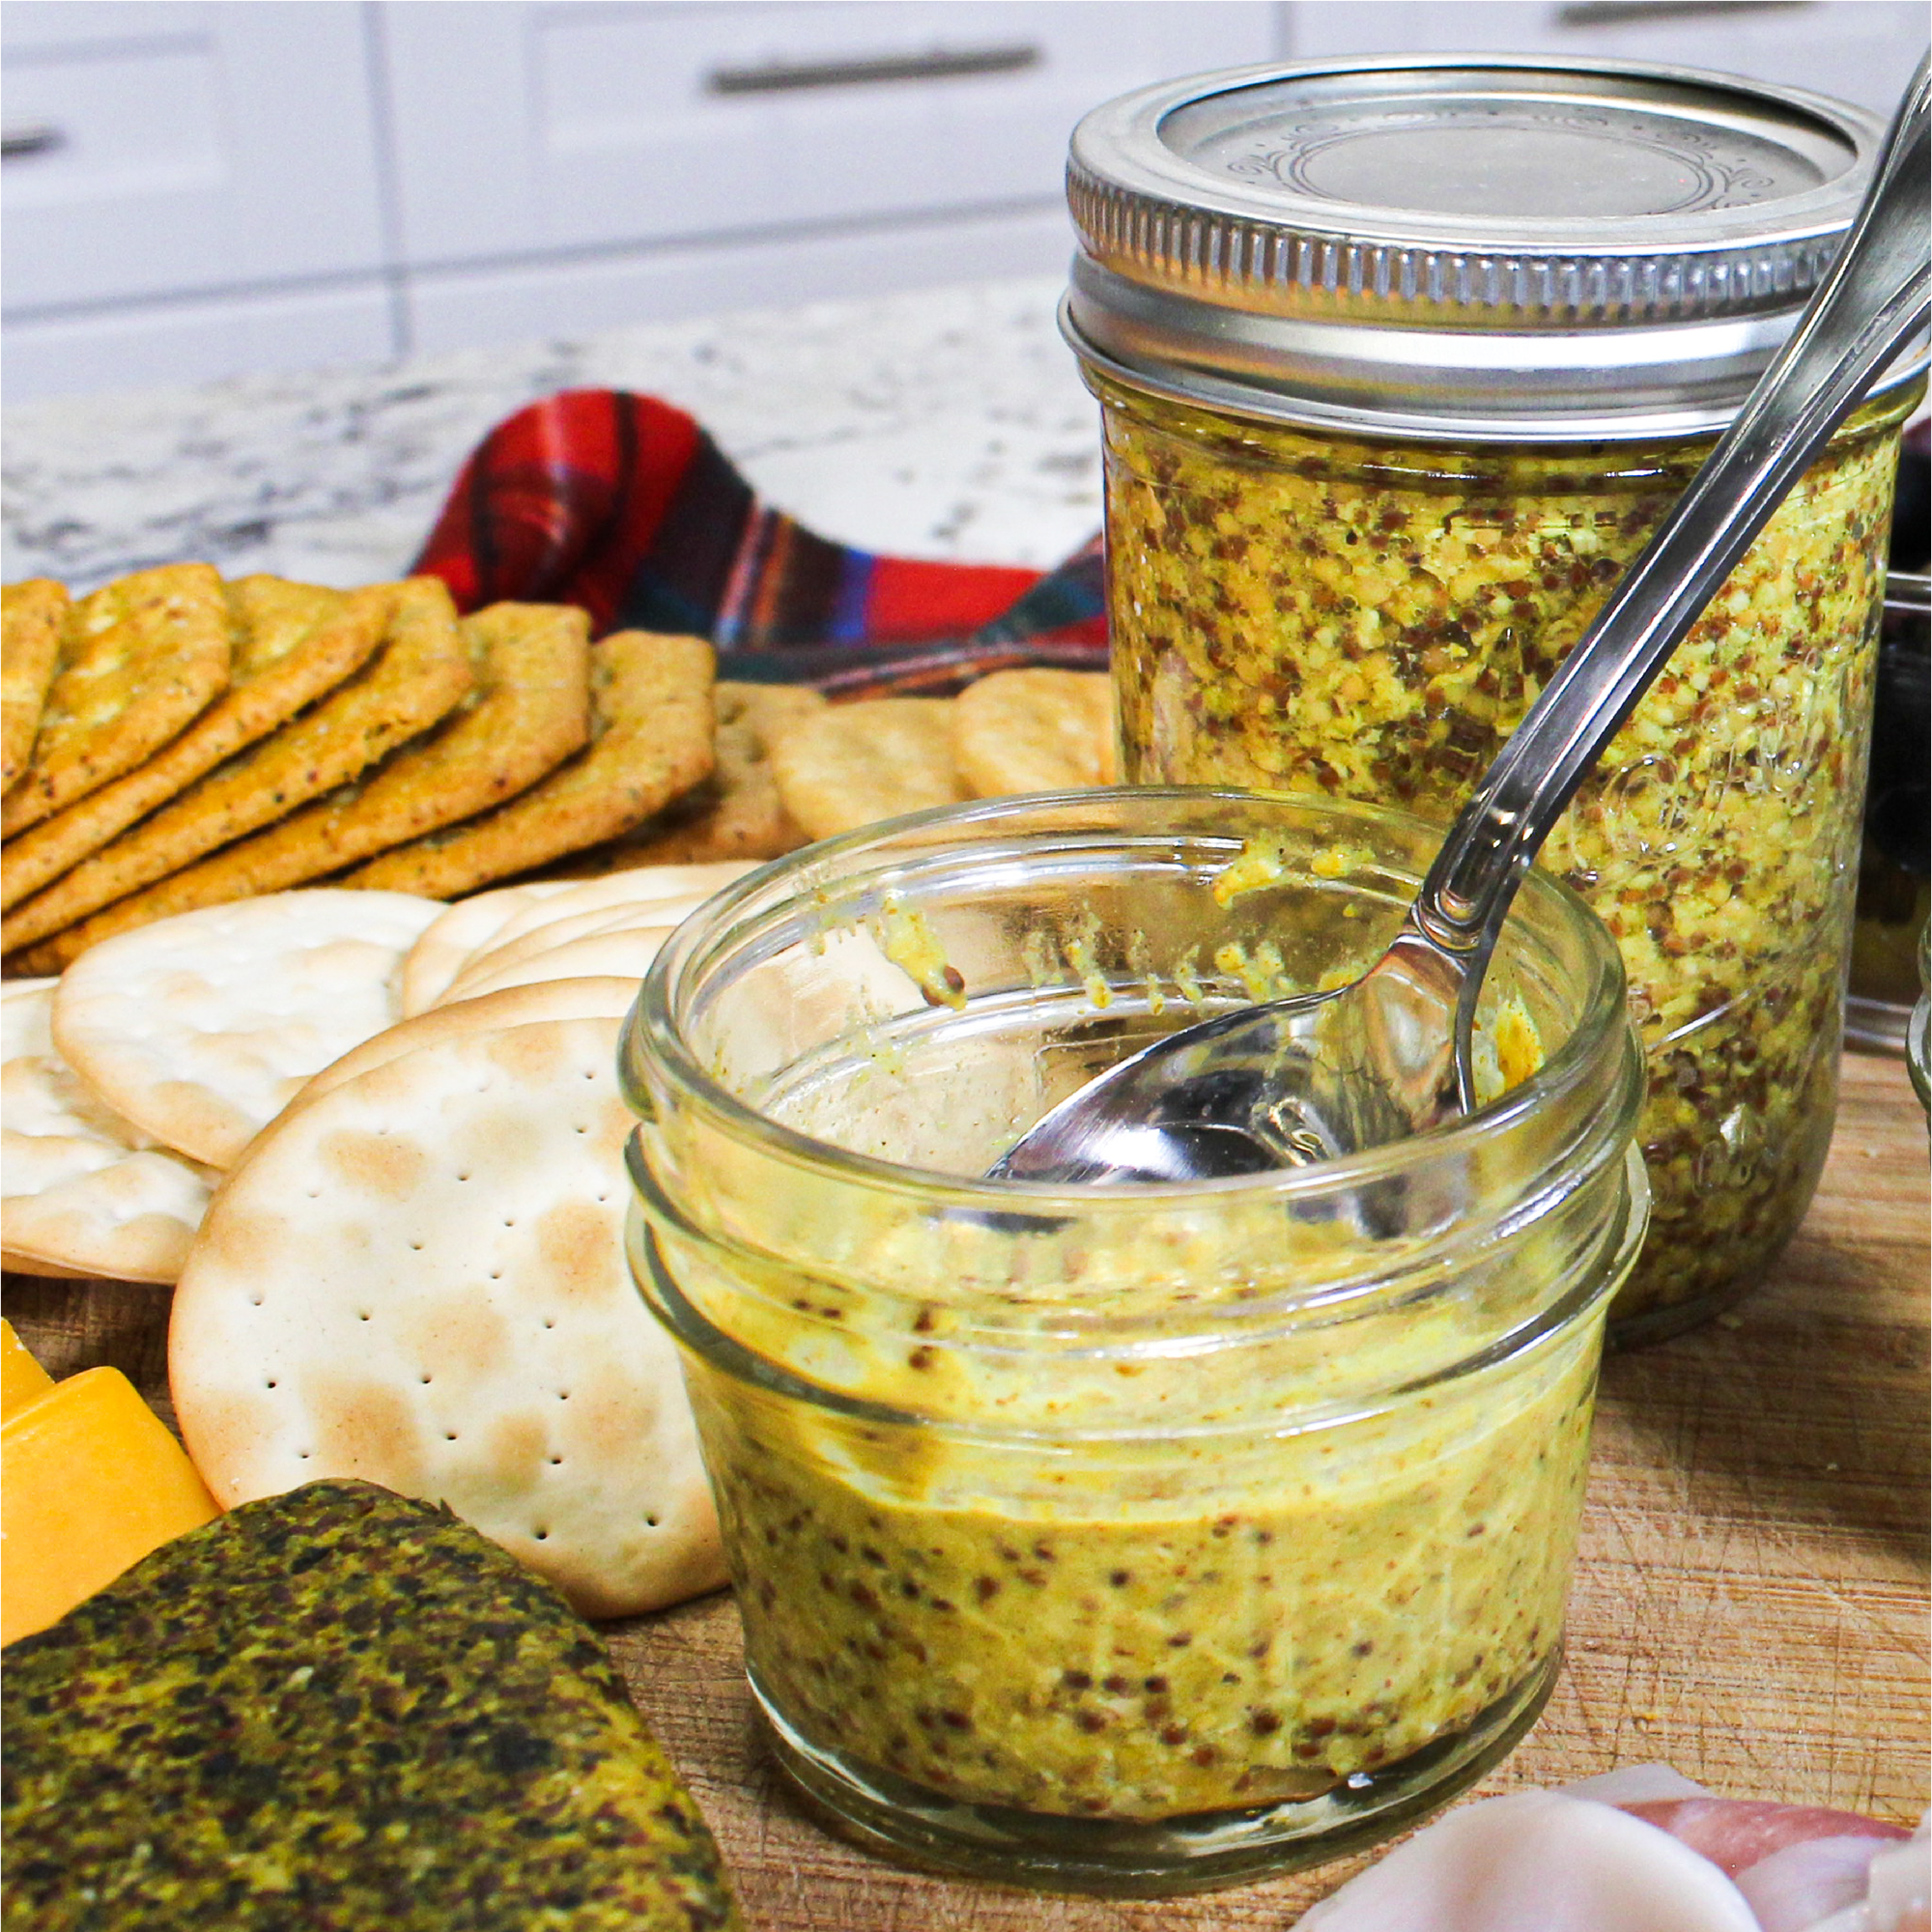 Whole Grain Mustard Recipe in Your Pressure Cooker